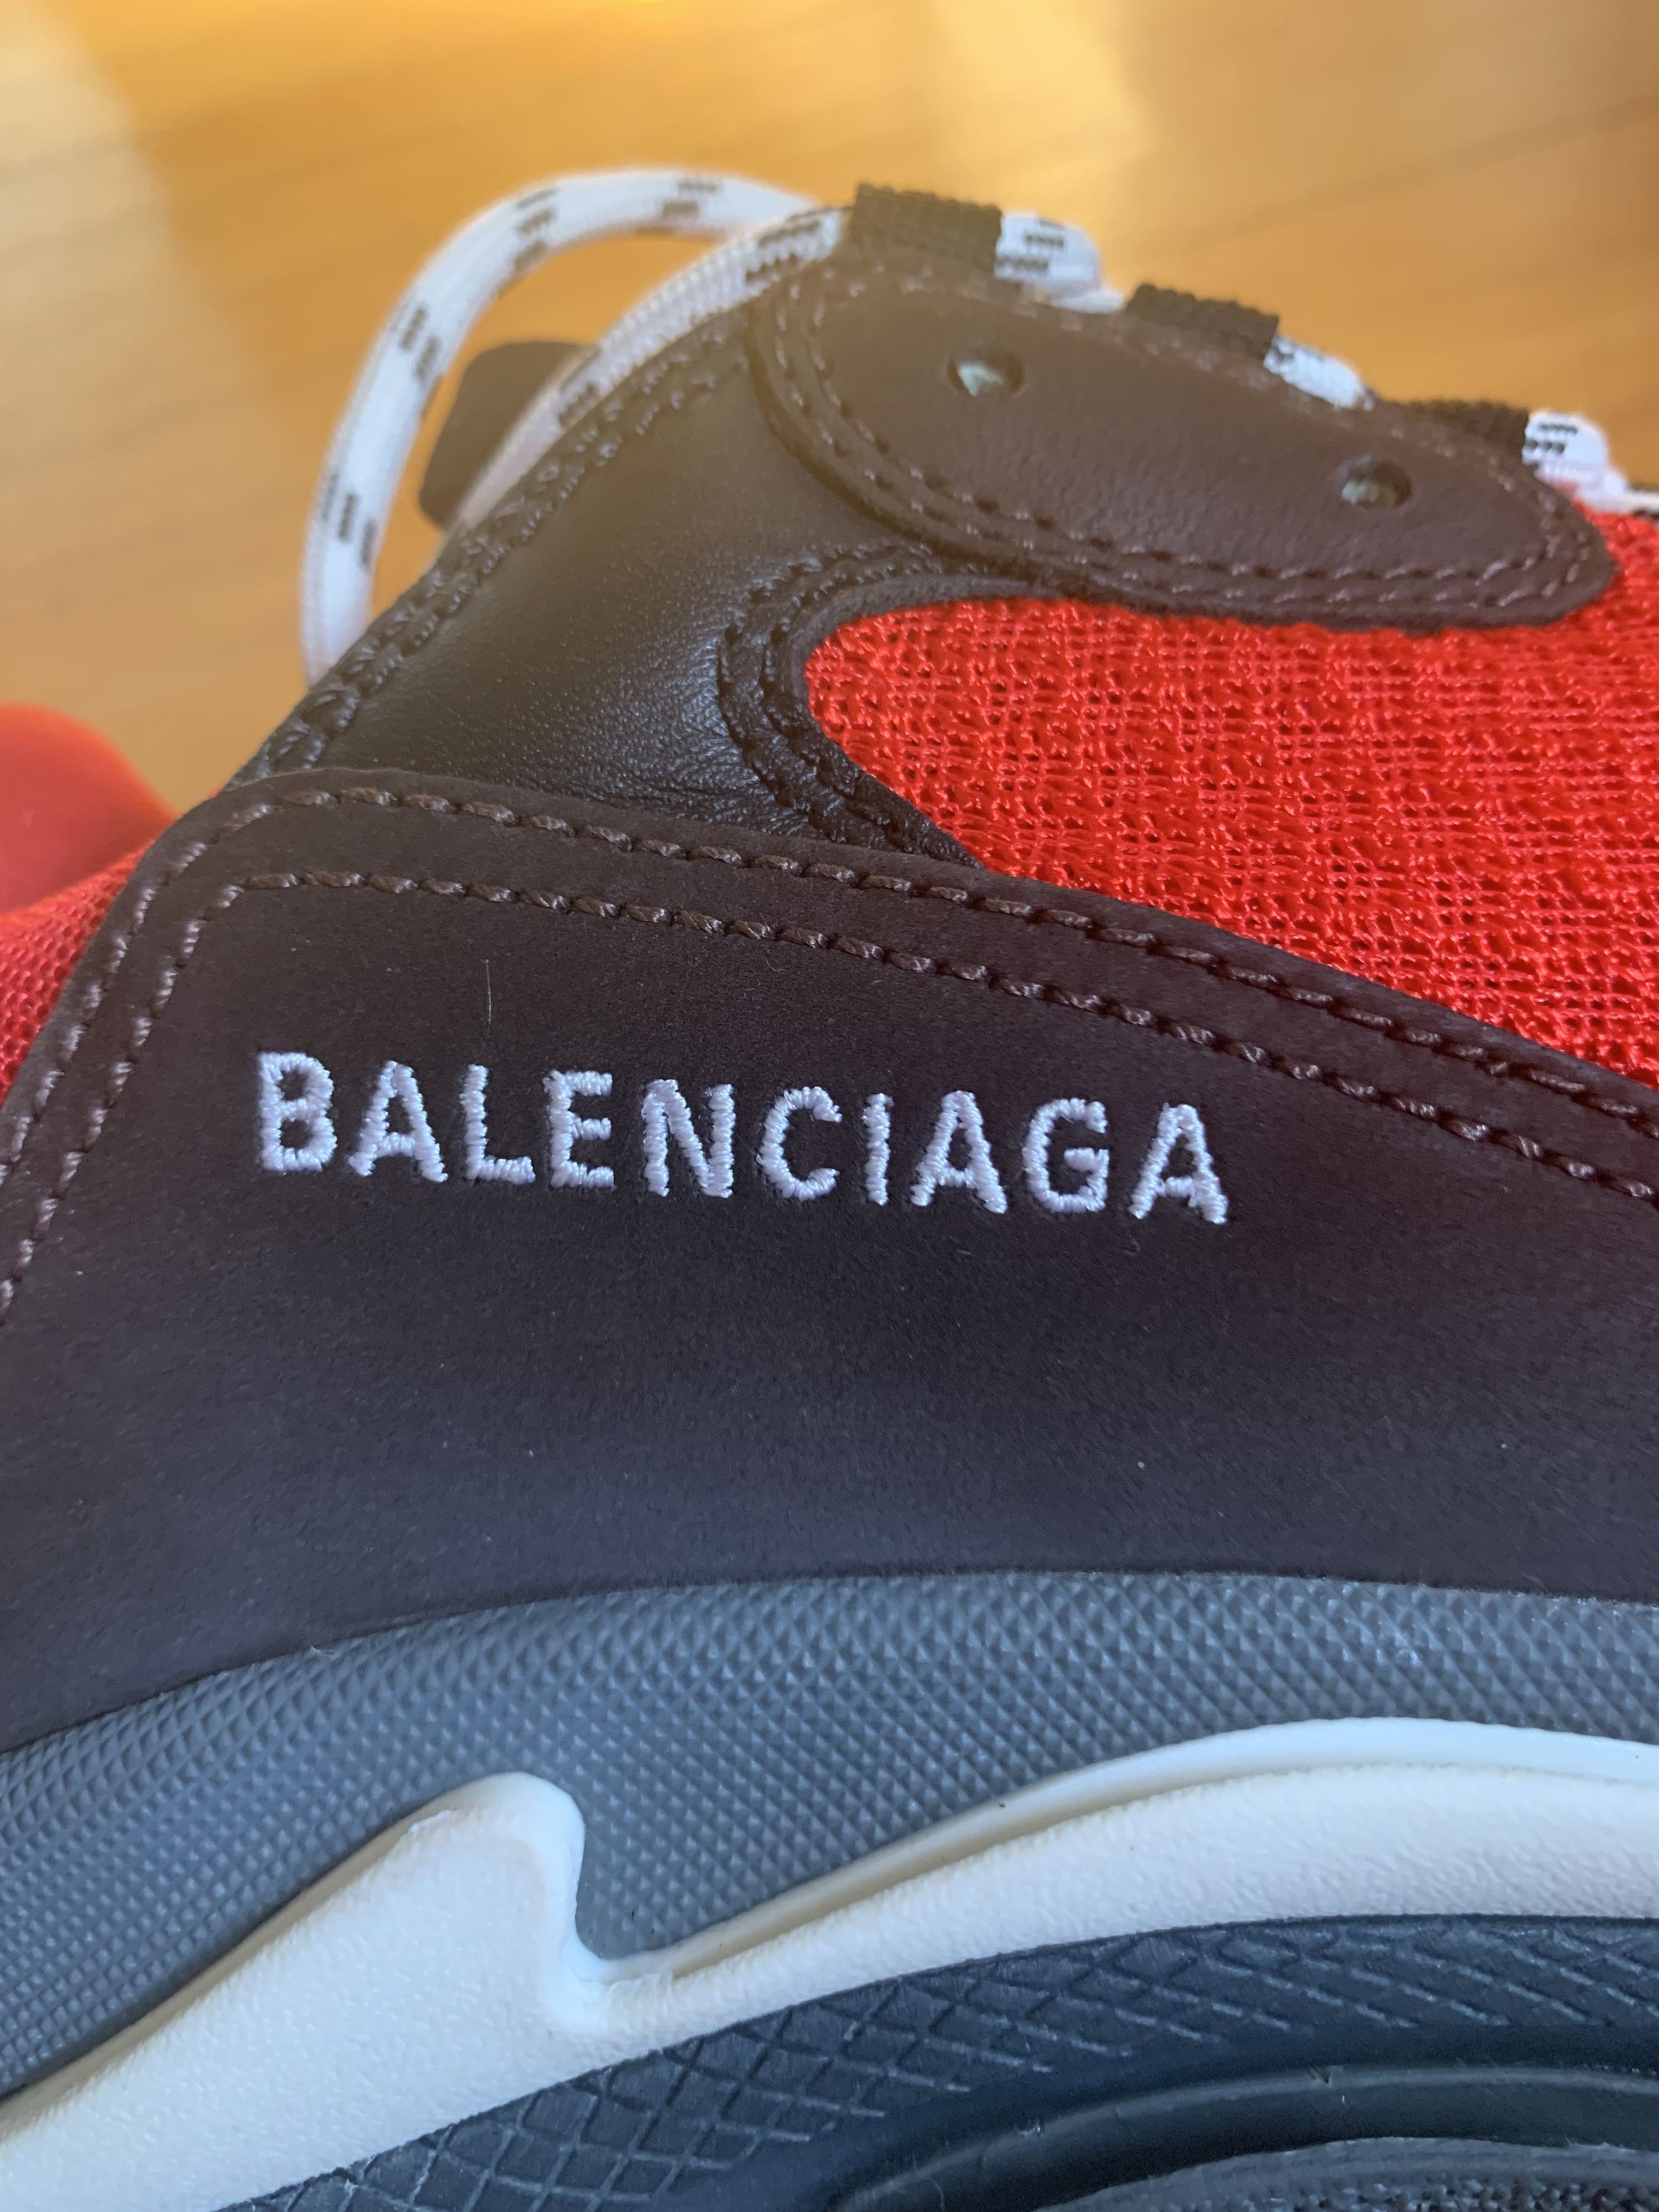 Balenciaga Balenciaga Triple S Sneakers Size US 9 / EU 42 - 6 Thumbnail